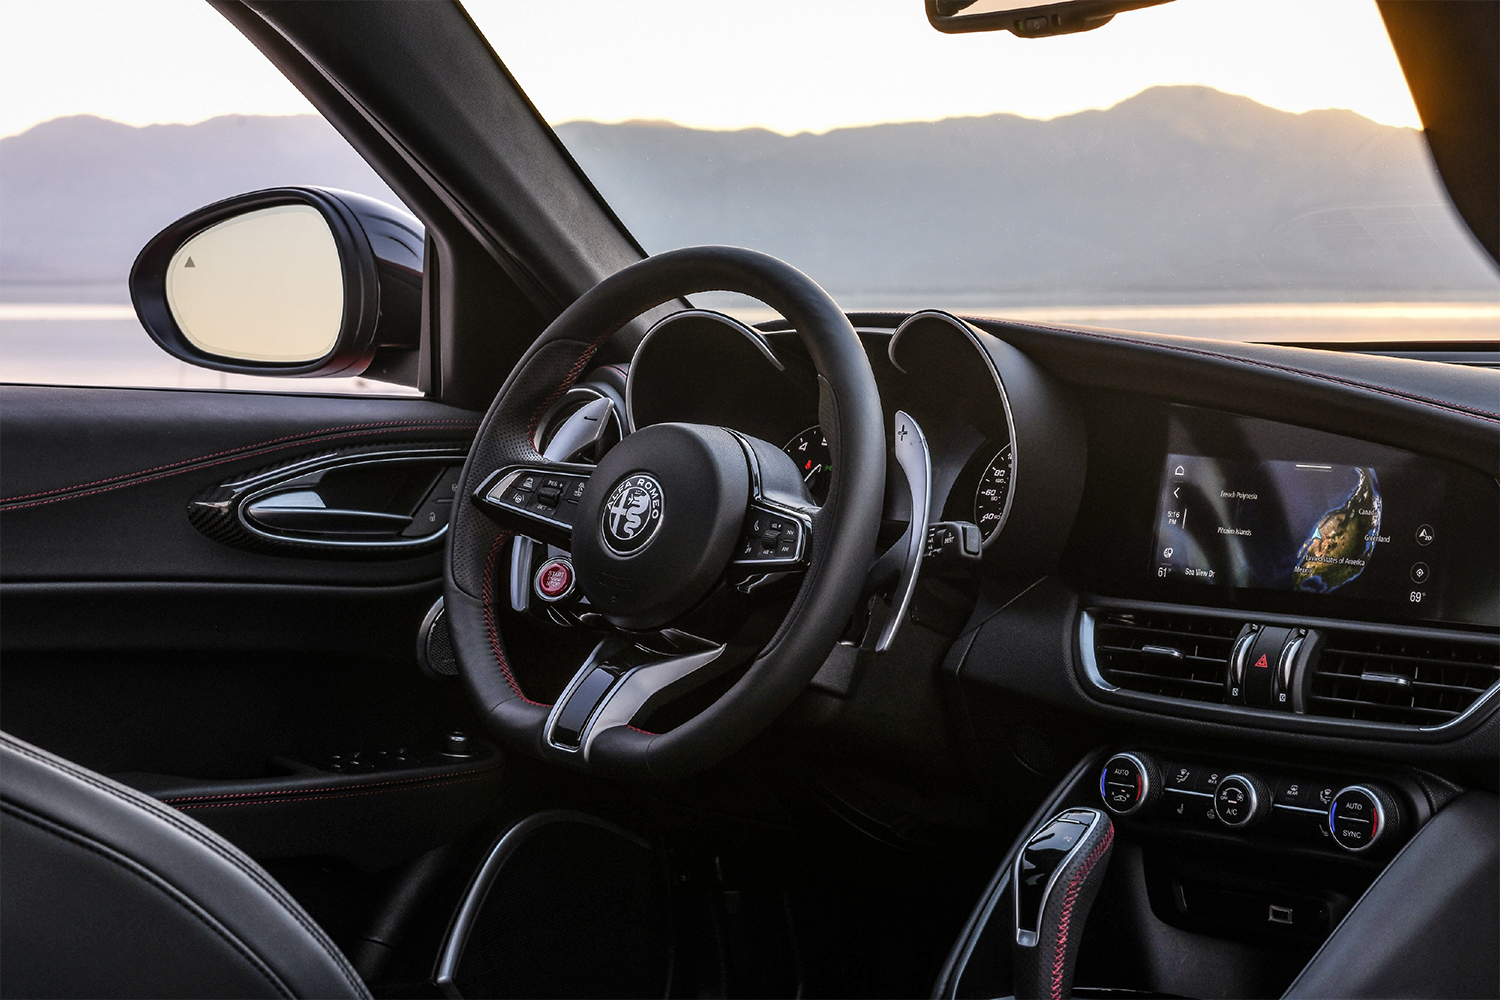 The interior of the 2021 Alfa Romeo Giulia Quadrifoglio, including the steering wheel, shifter and dashboard